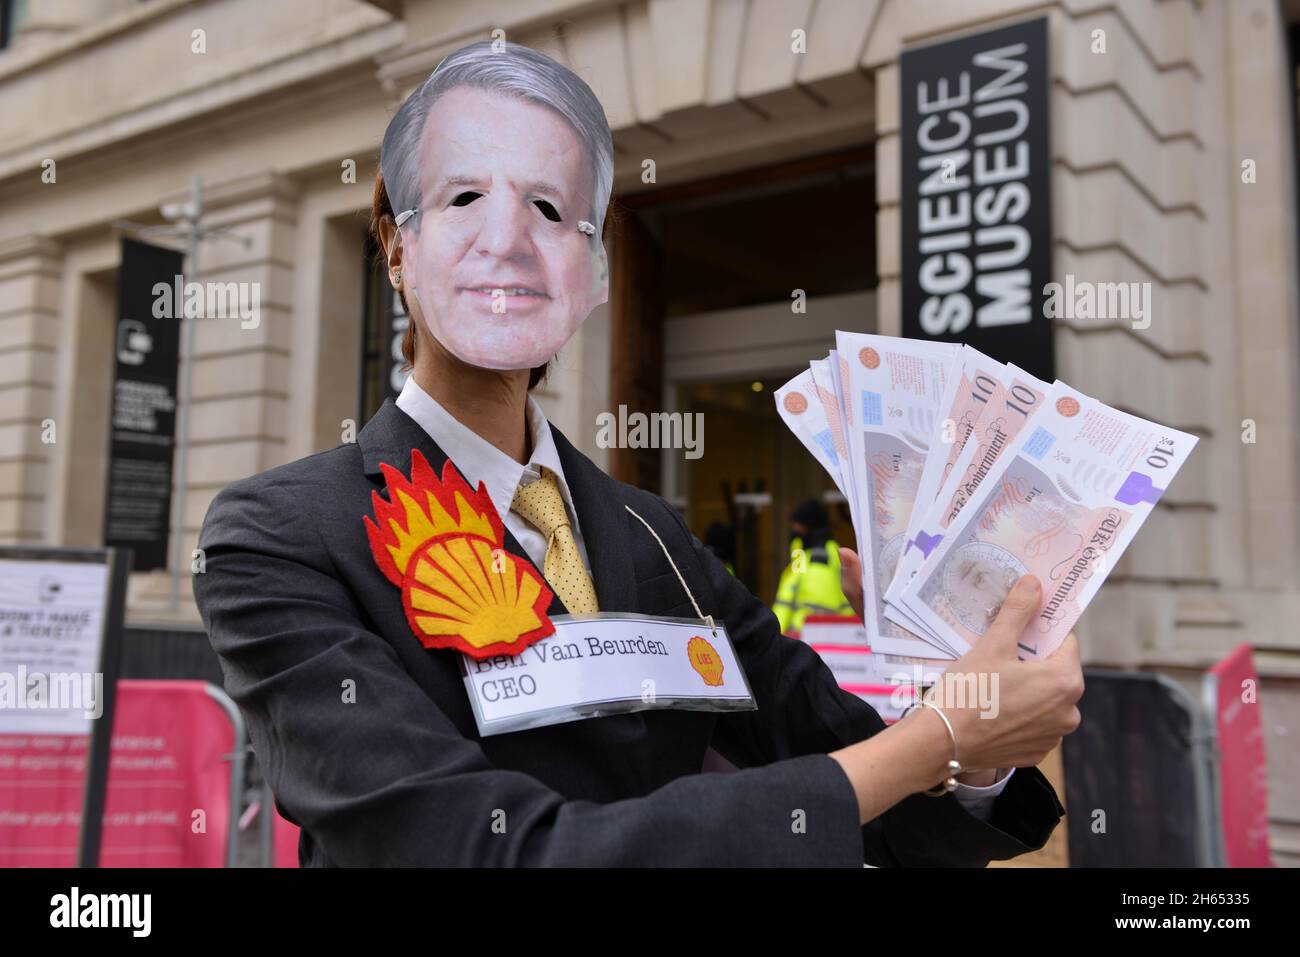 Ein Protestler, der als Shell-CEO Ben van Beurden gekleidet ist, posiert während der Demonstration mit gefälschtem Geld. Extinction Rebellion-Aktivisten veranstalteten einen Protest gegenüber dem Science Museum in South Kensington gegen das Sponsoring des Museums durch die fossilen Energiekonzerne Shell und Adani. Stockfoto